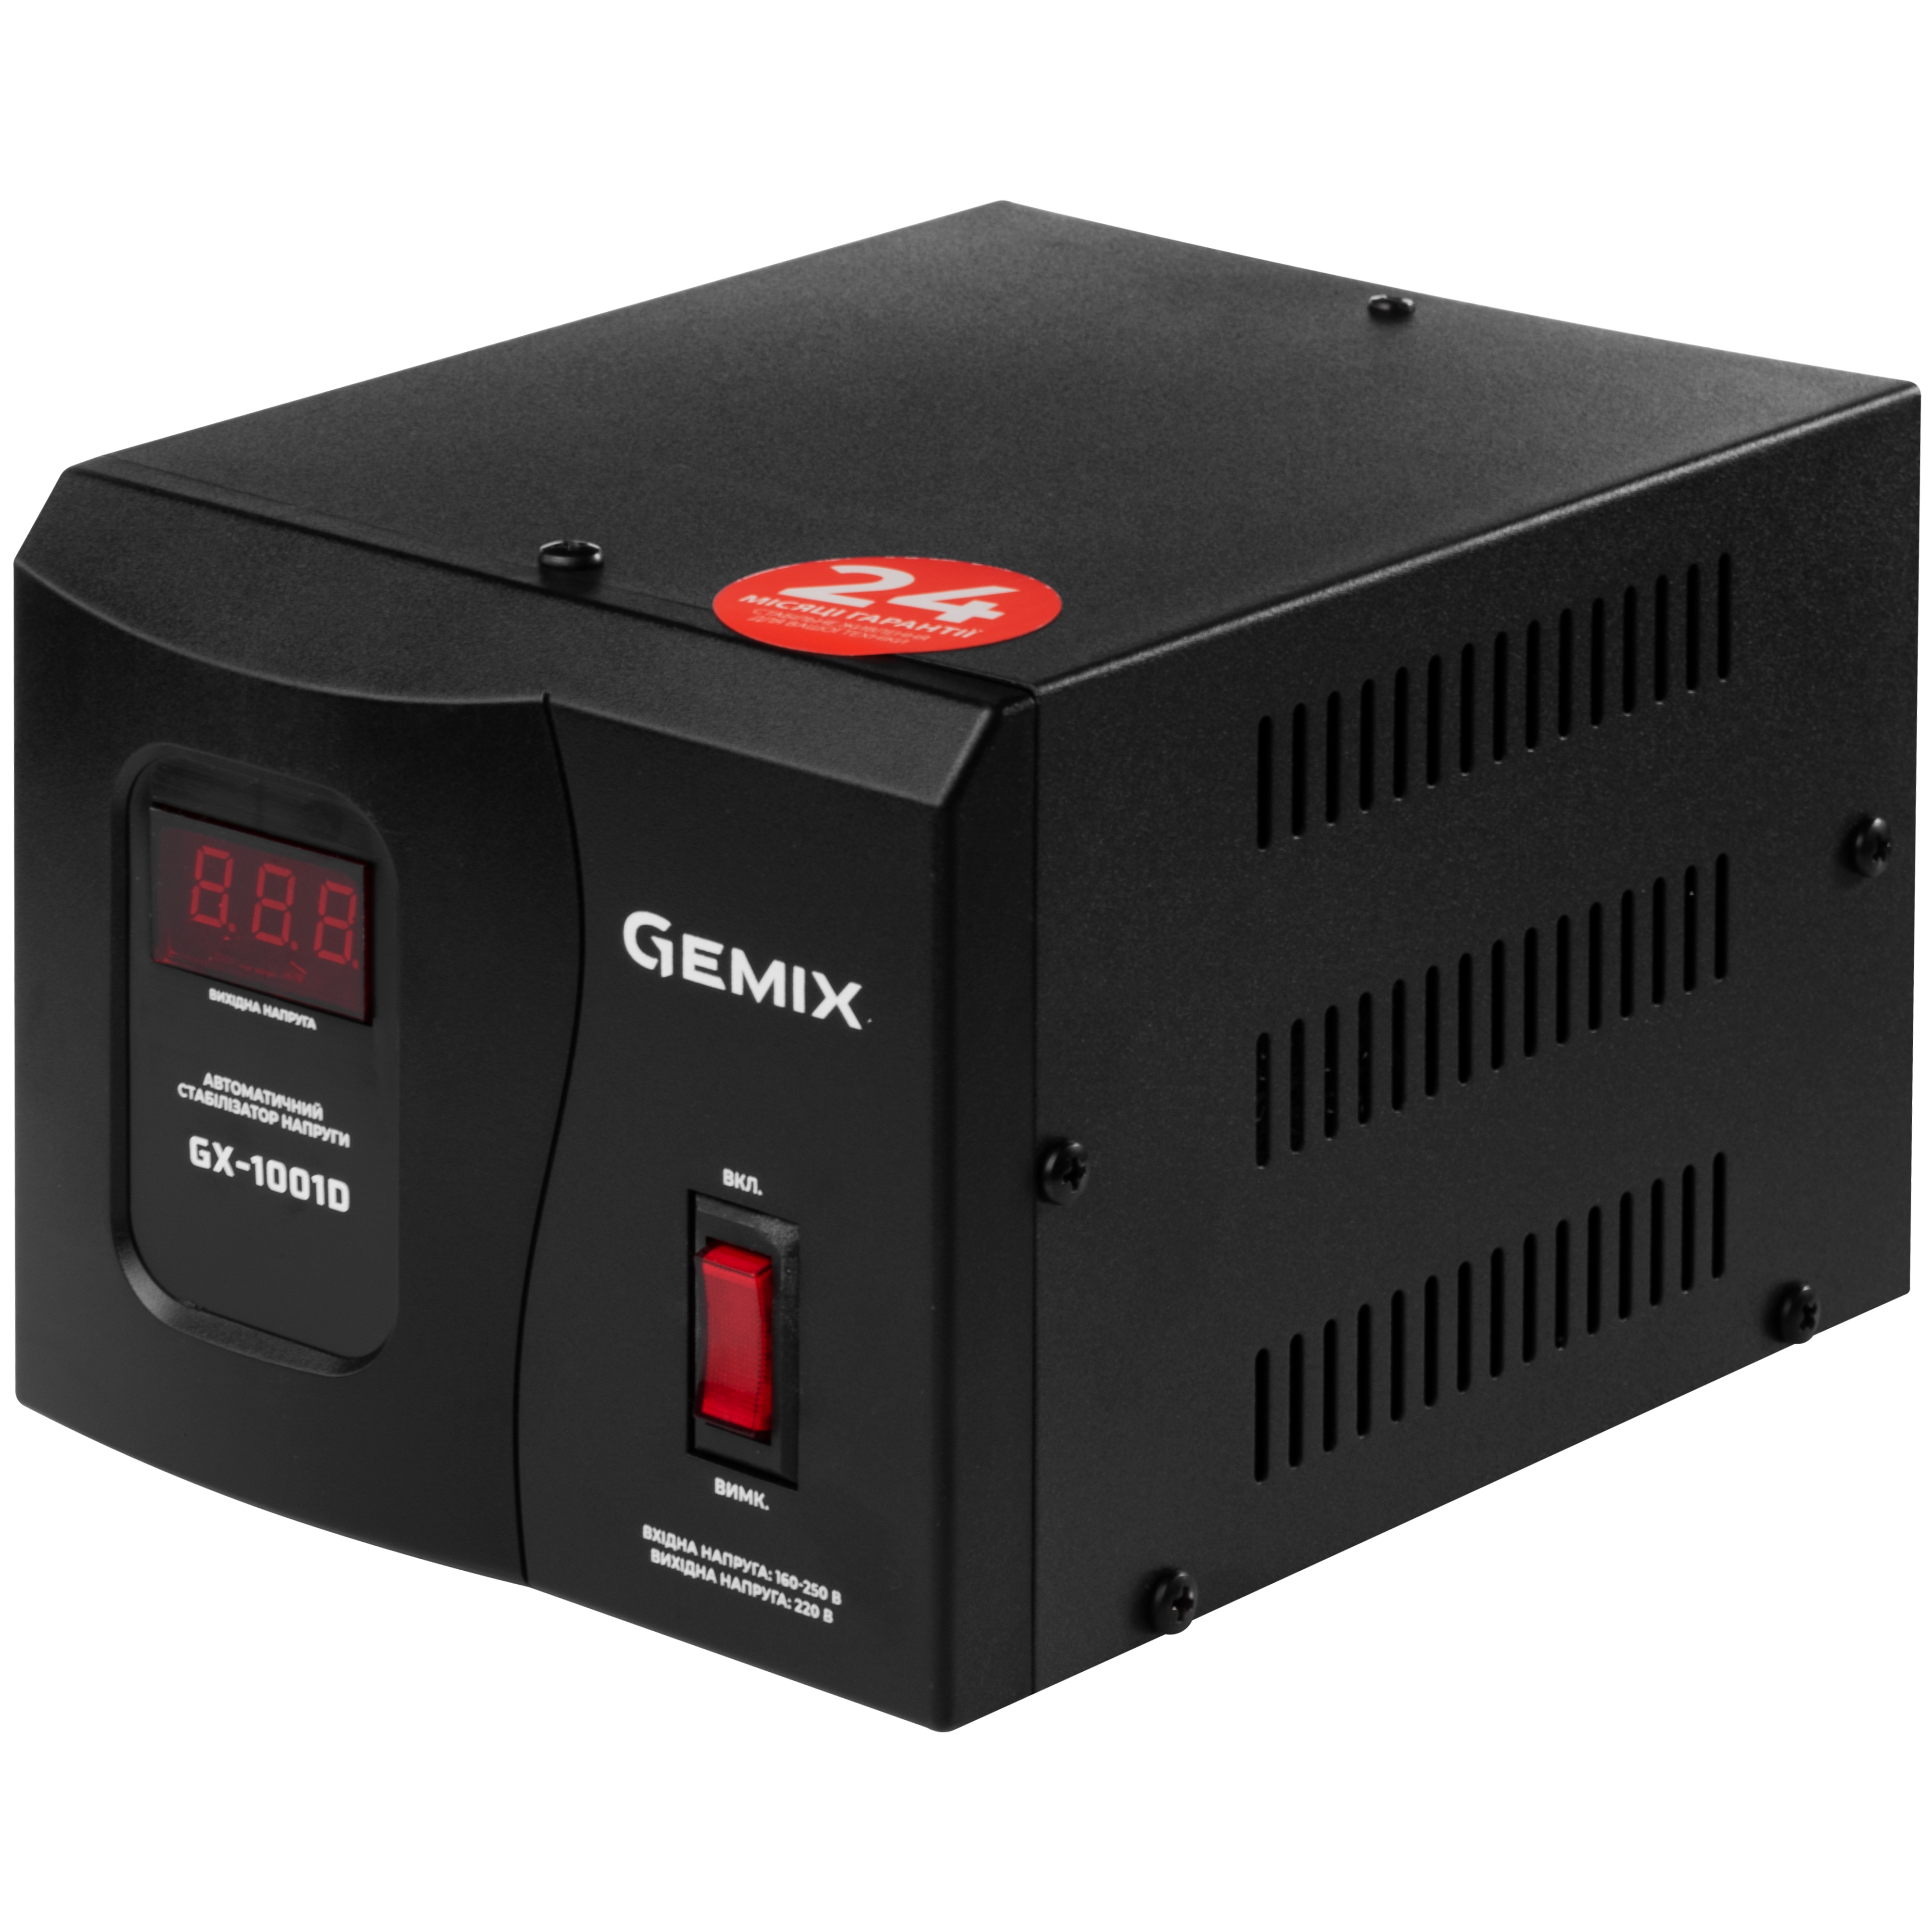 Отзывы релейный стабилизатор Gemix GX-1001D в Украине